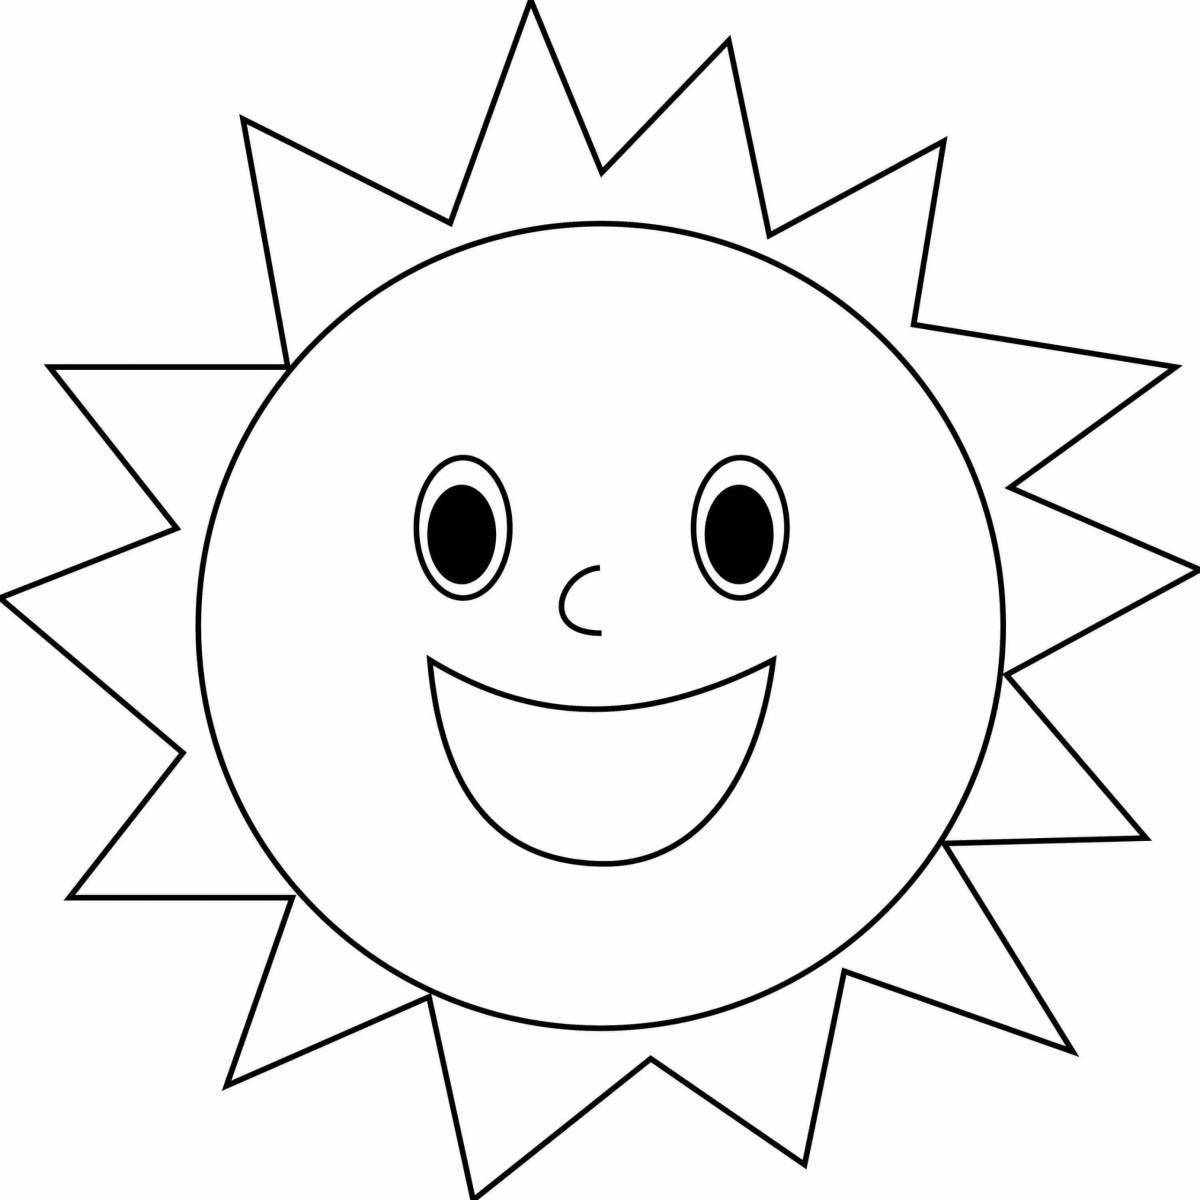 Солнышко раскраска для детей 4-5 лет